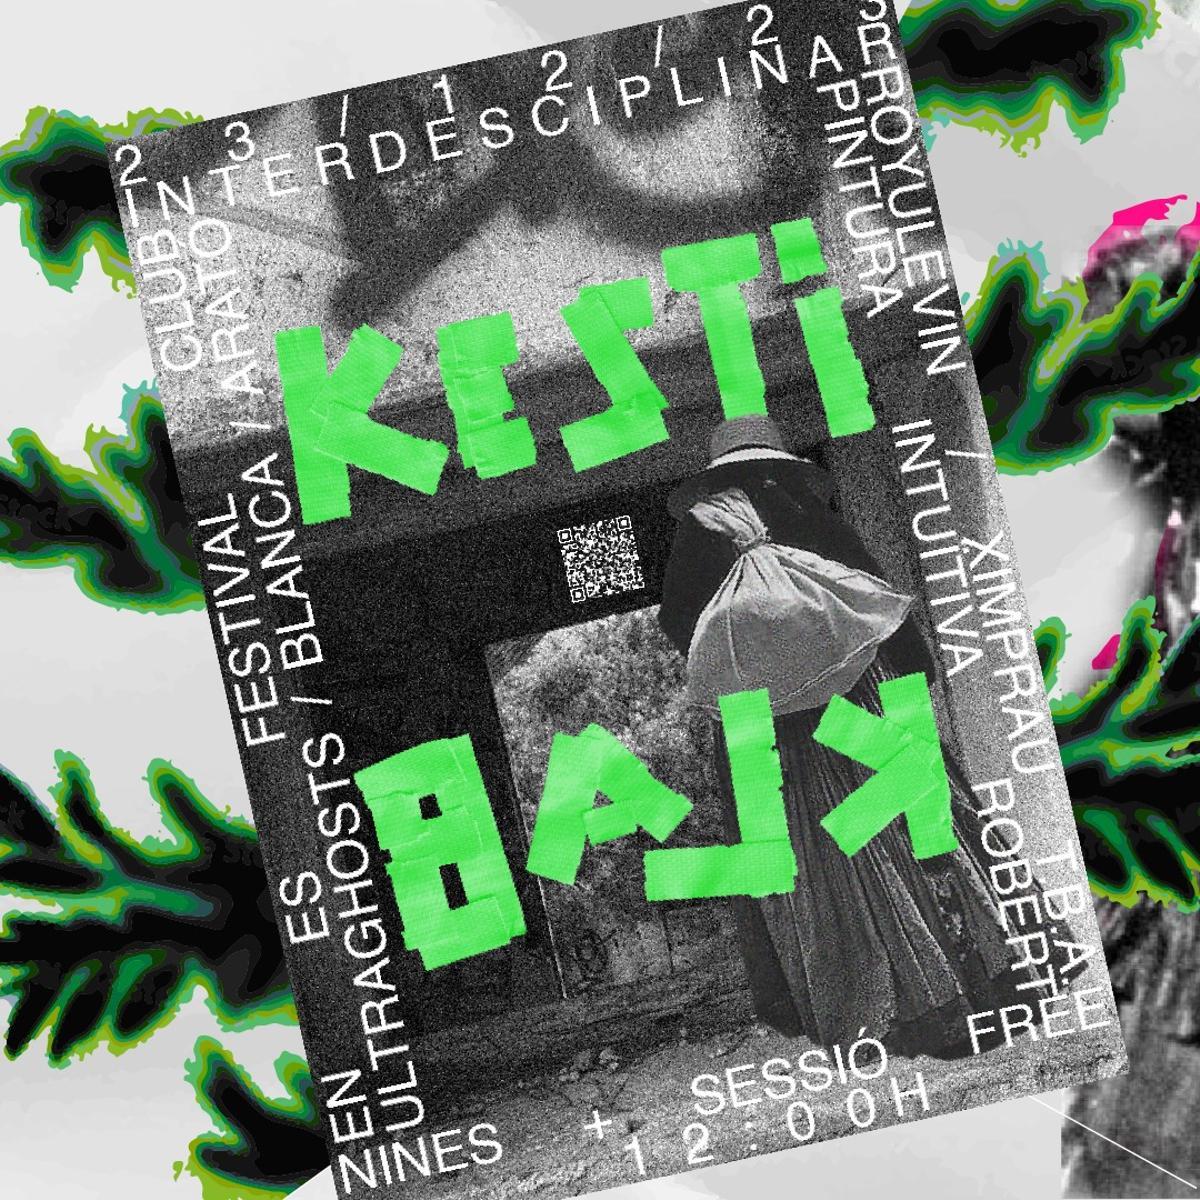 Cartel de la primera edición Kesti Klab, asociación de jóvenes artistas de Ibiza.